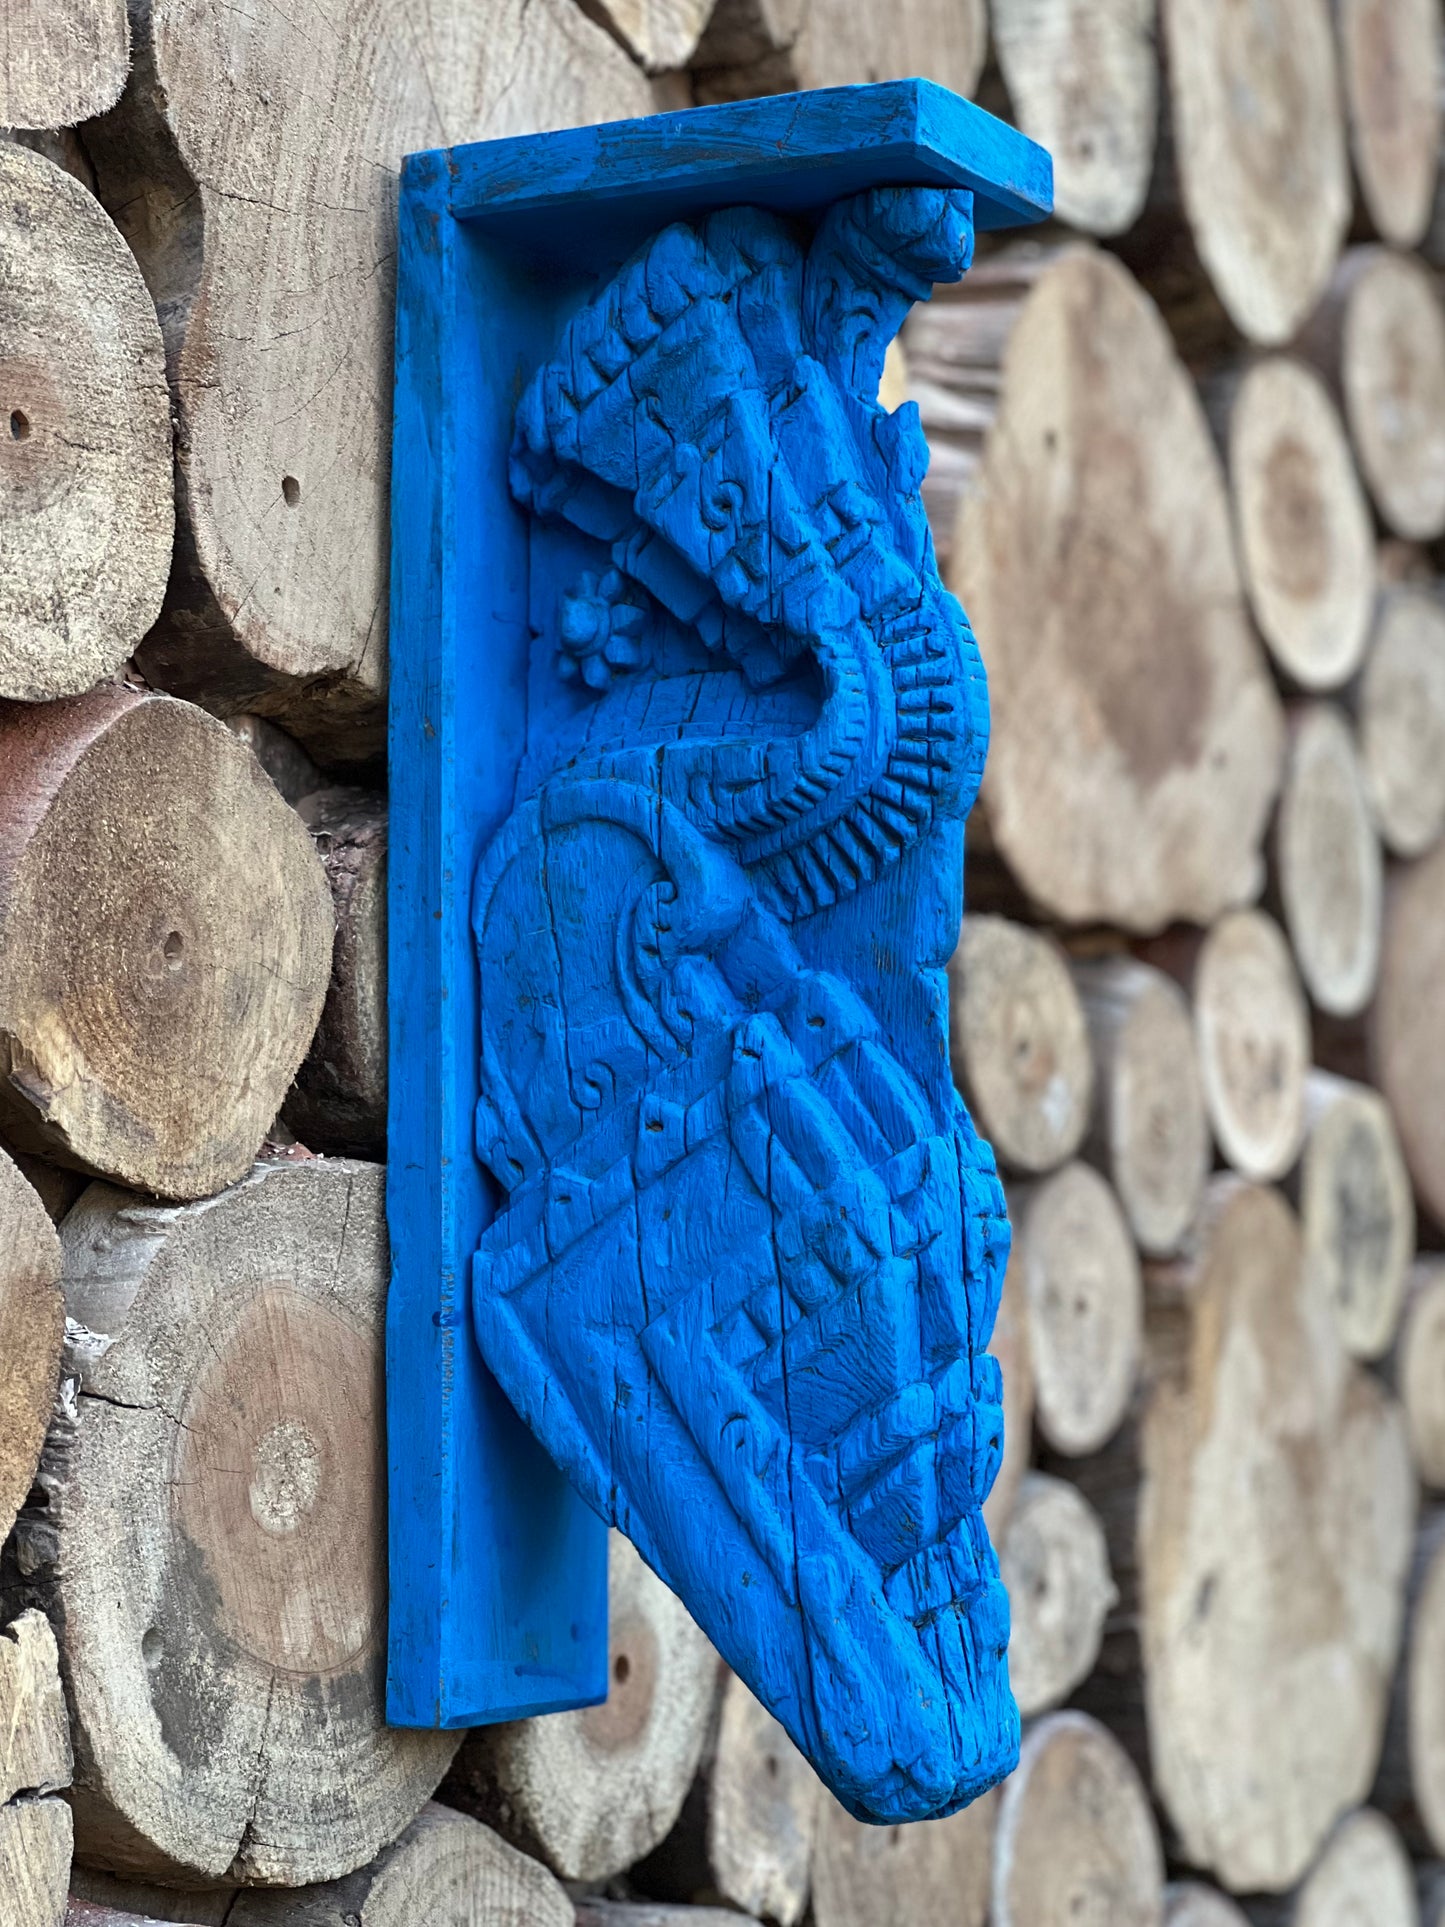 Vintage Blue Wooden Carved Wall Bracket